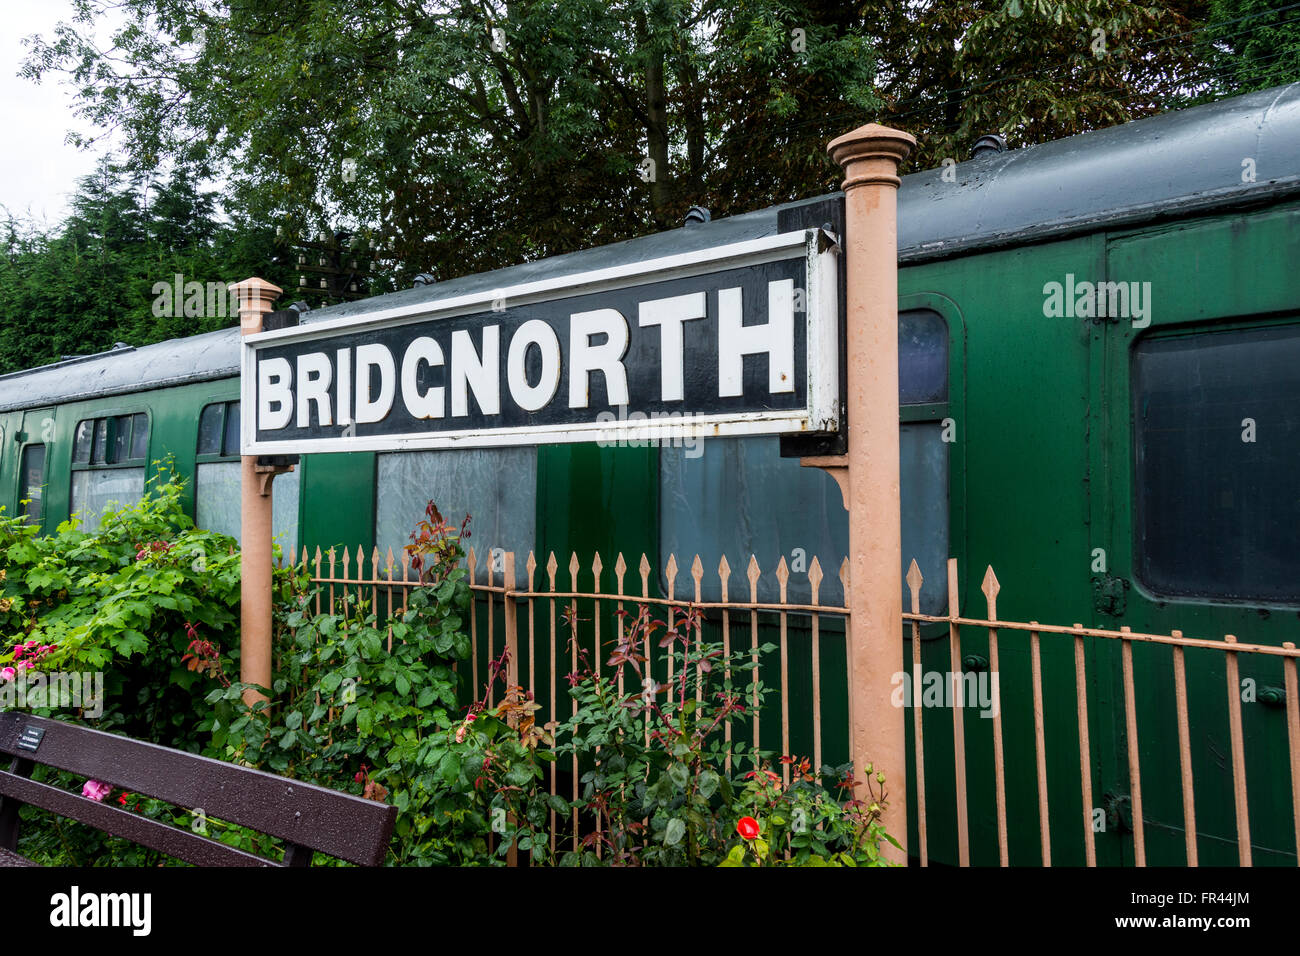 Melden Sie sich am Bahnhof, Severn Valley Railway, Bridgnorth, Shropshire, England, UK Stockfoto